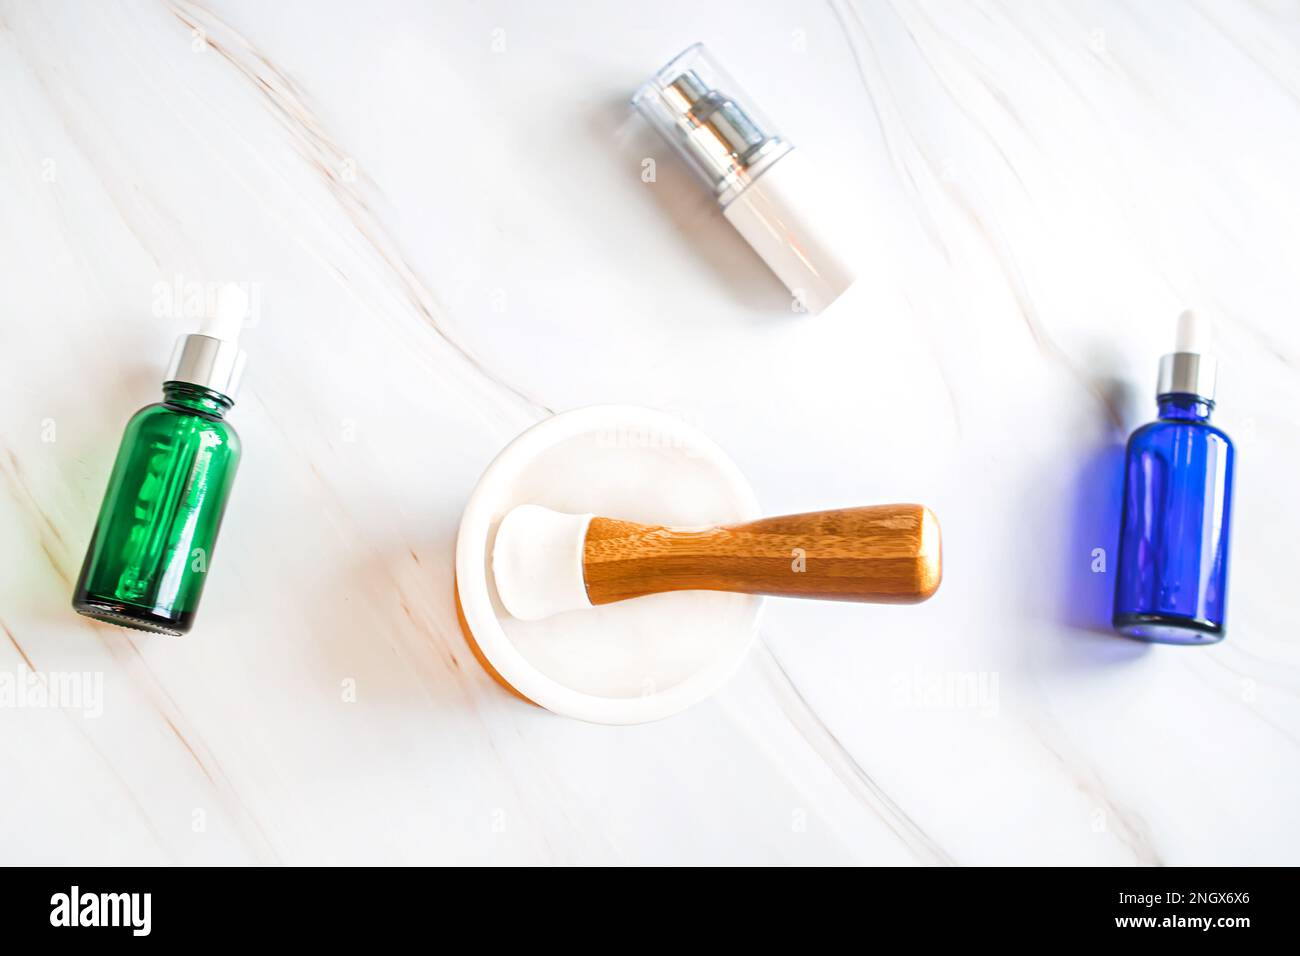 Behälter für Gesichtspflegecremes, Elexiere und ätherische Öle auf einem Marmortisch mit leerem Mörtel für Heilkräuter Stockfoto